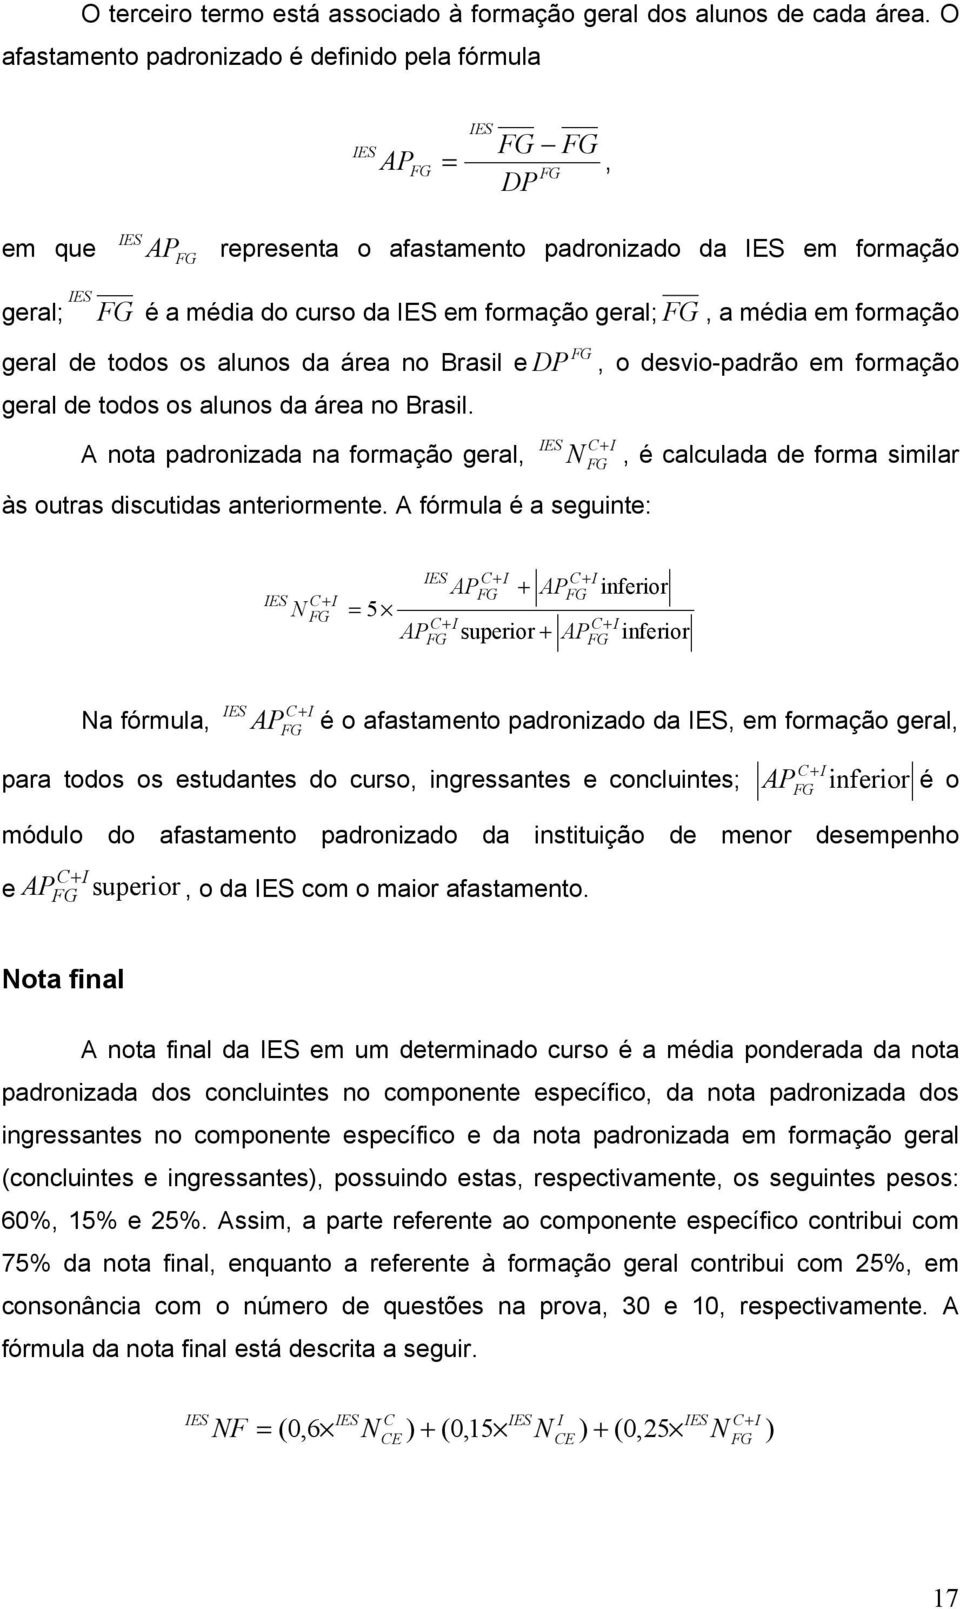 formação geral; FG, a média em formação geral de todos os alunos da área no Brasil edp geral de todos os alunos da área no Brasil.